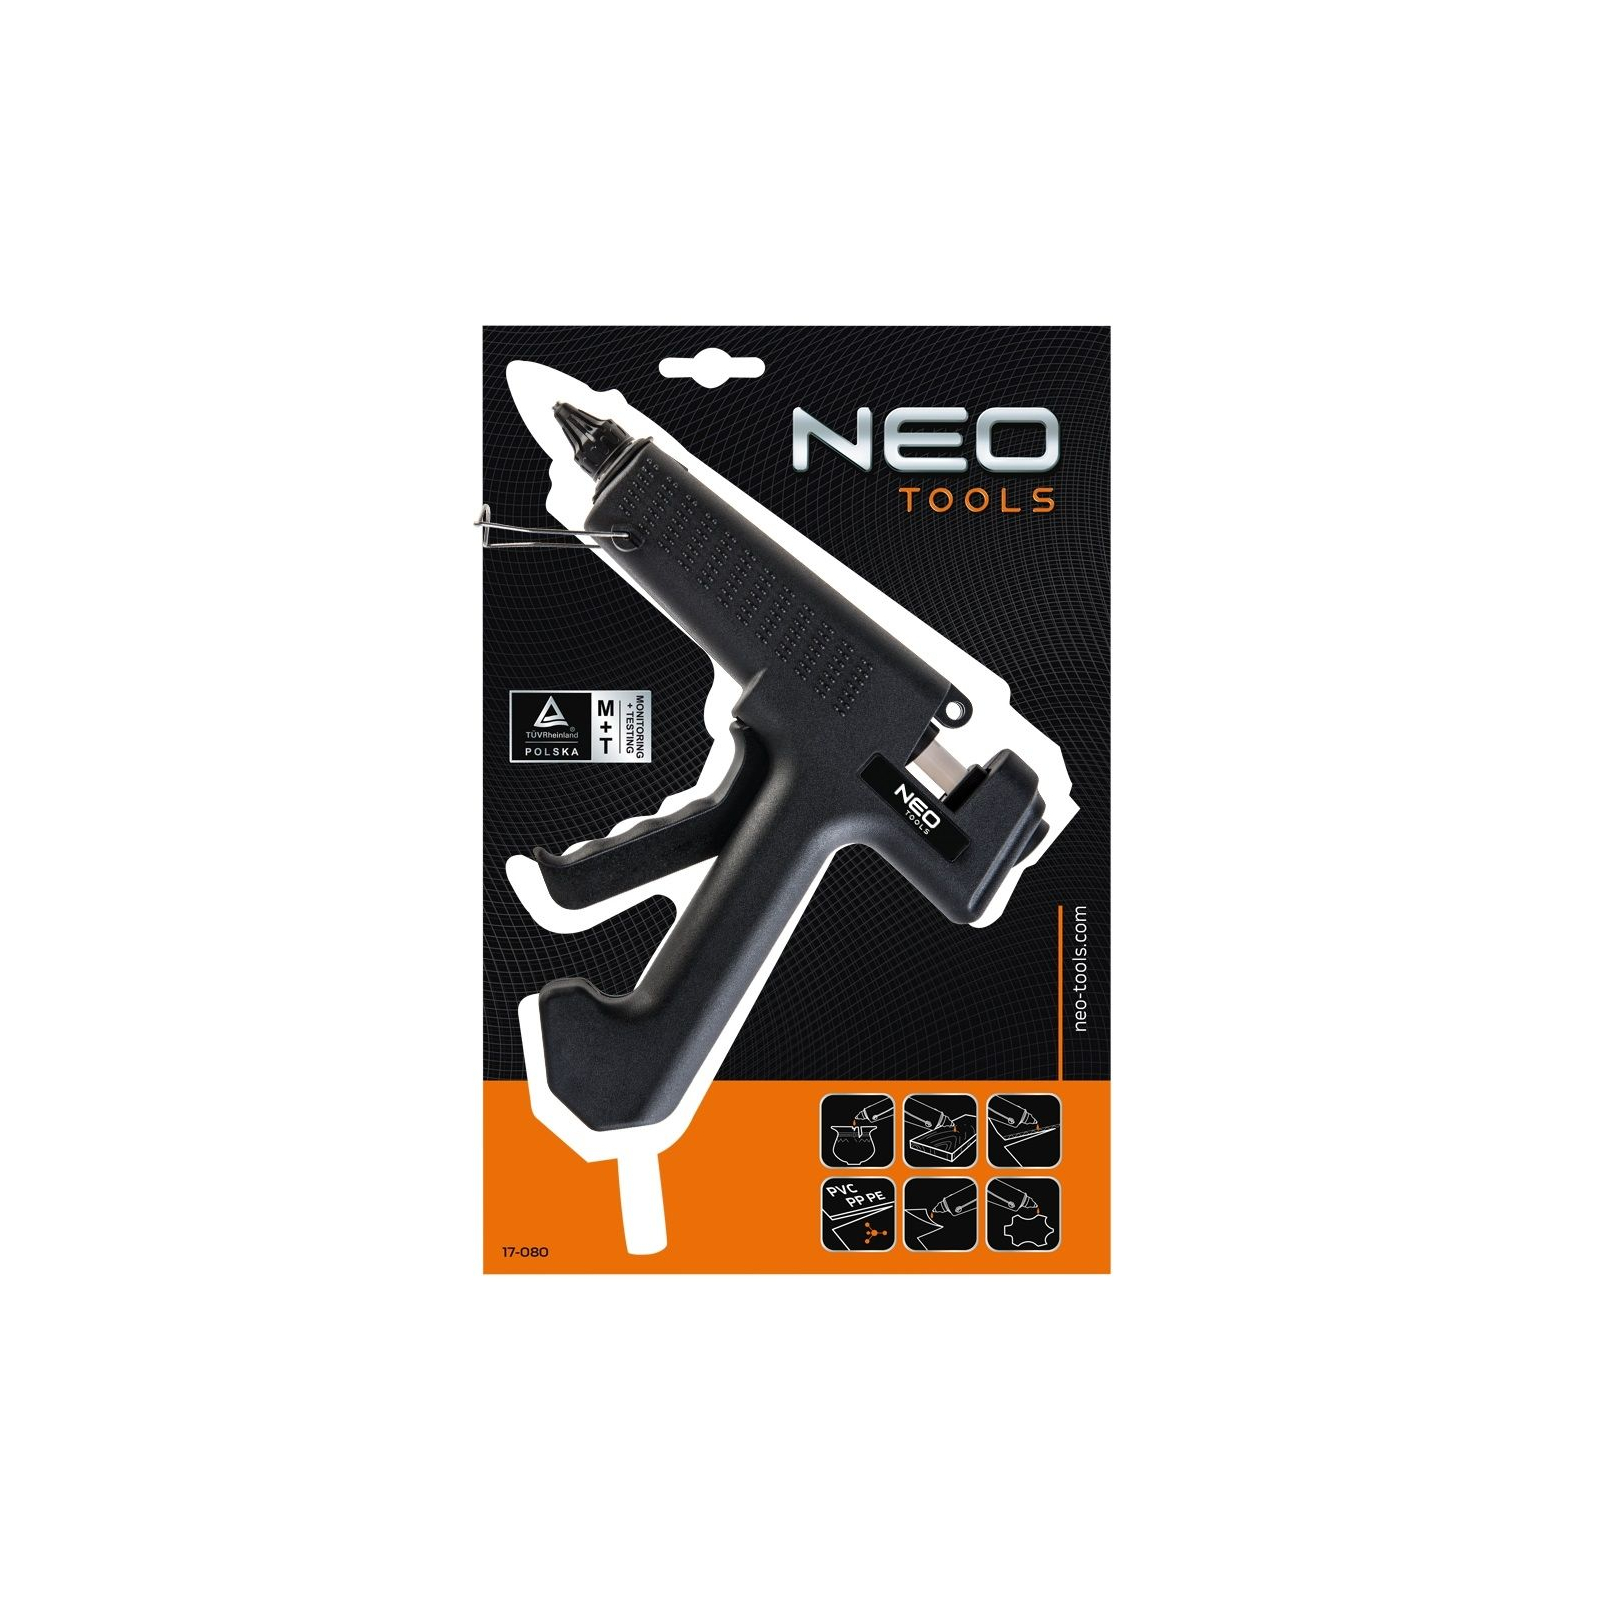 Клеевой пистолет Neo Tools 11 мм, 80 Вт (17-080) изображение 2